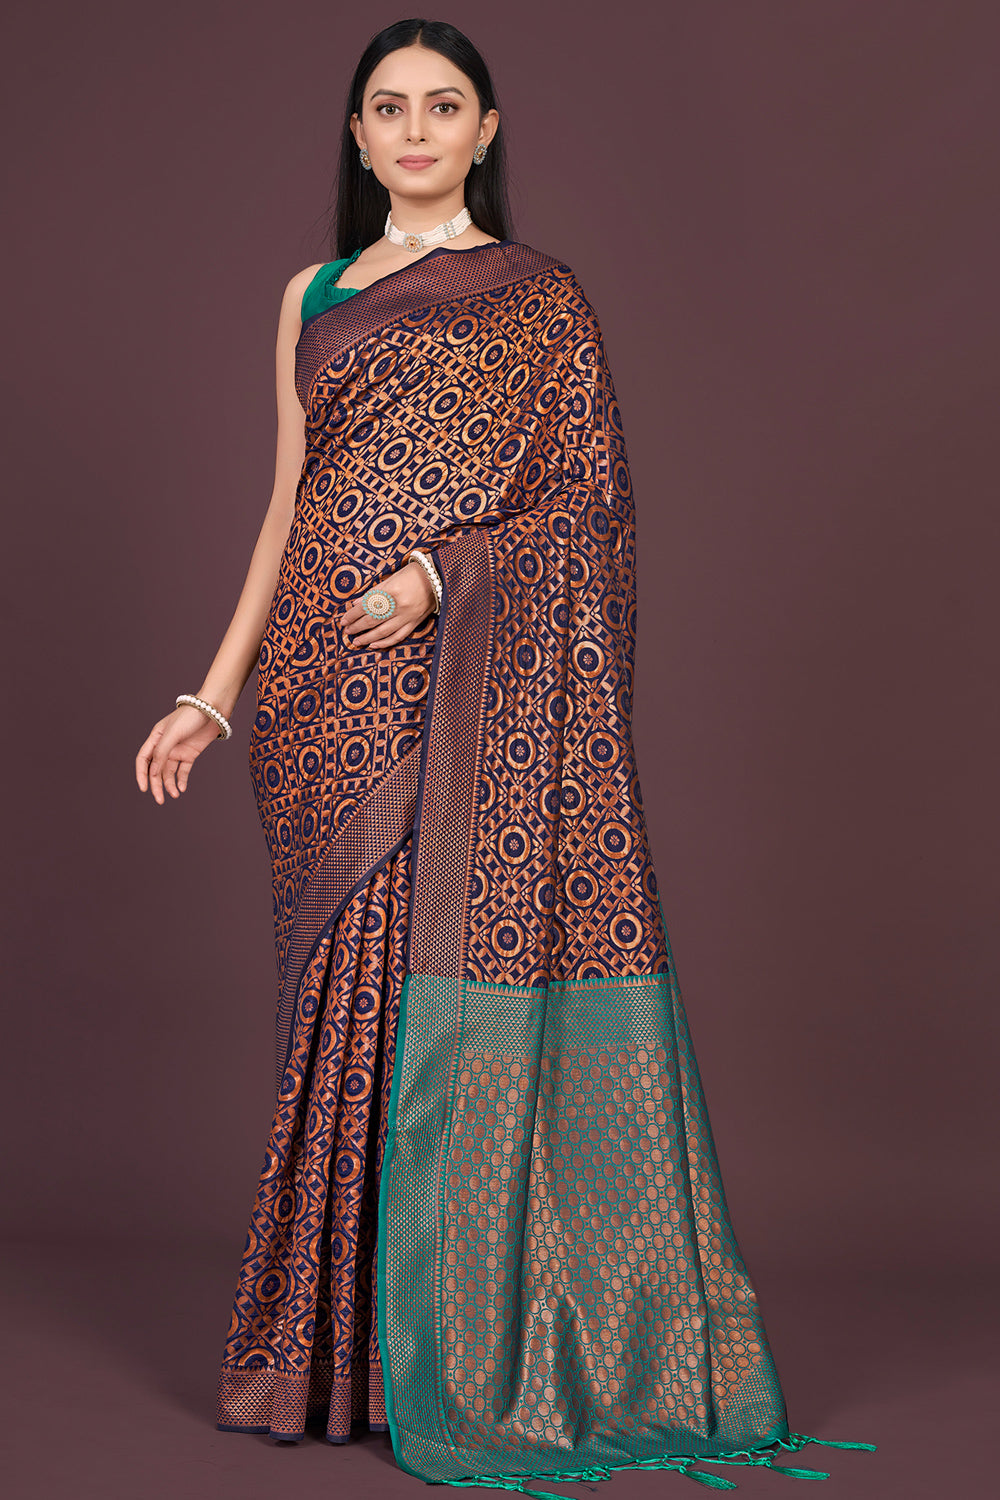 Beautiful Wine Color Saree, Wedding Saree Sequins Embroidered Saree,  Designer Saree With Belt, Bridesmaids Sari Indian Outfit Vichitra Silk -  Etsy